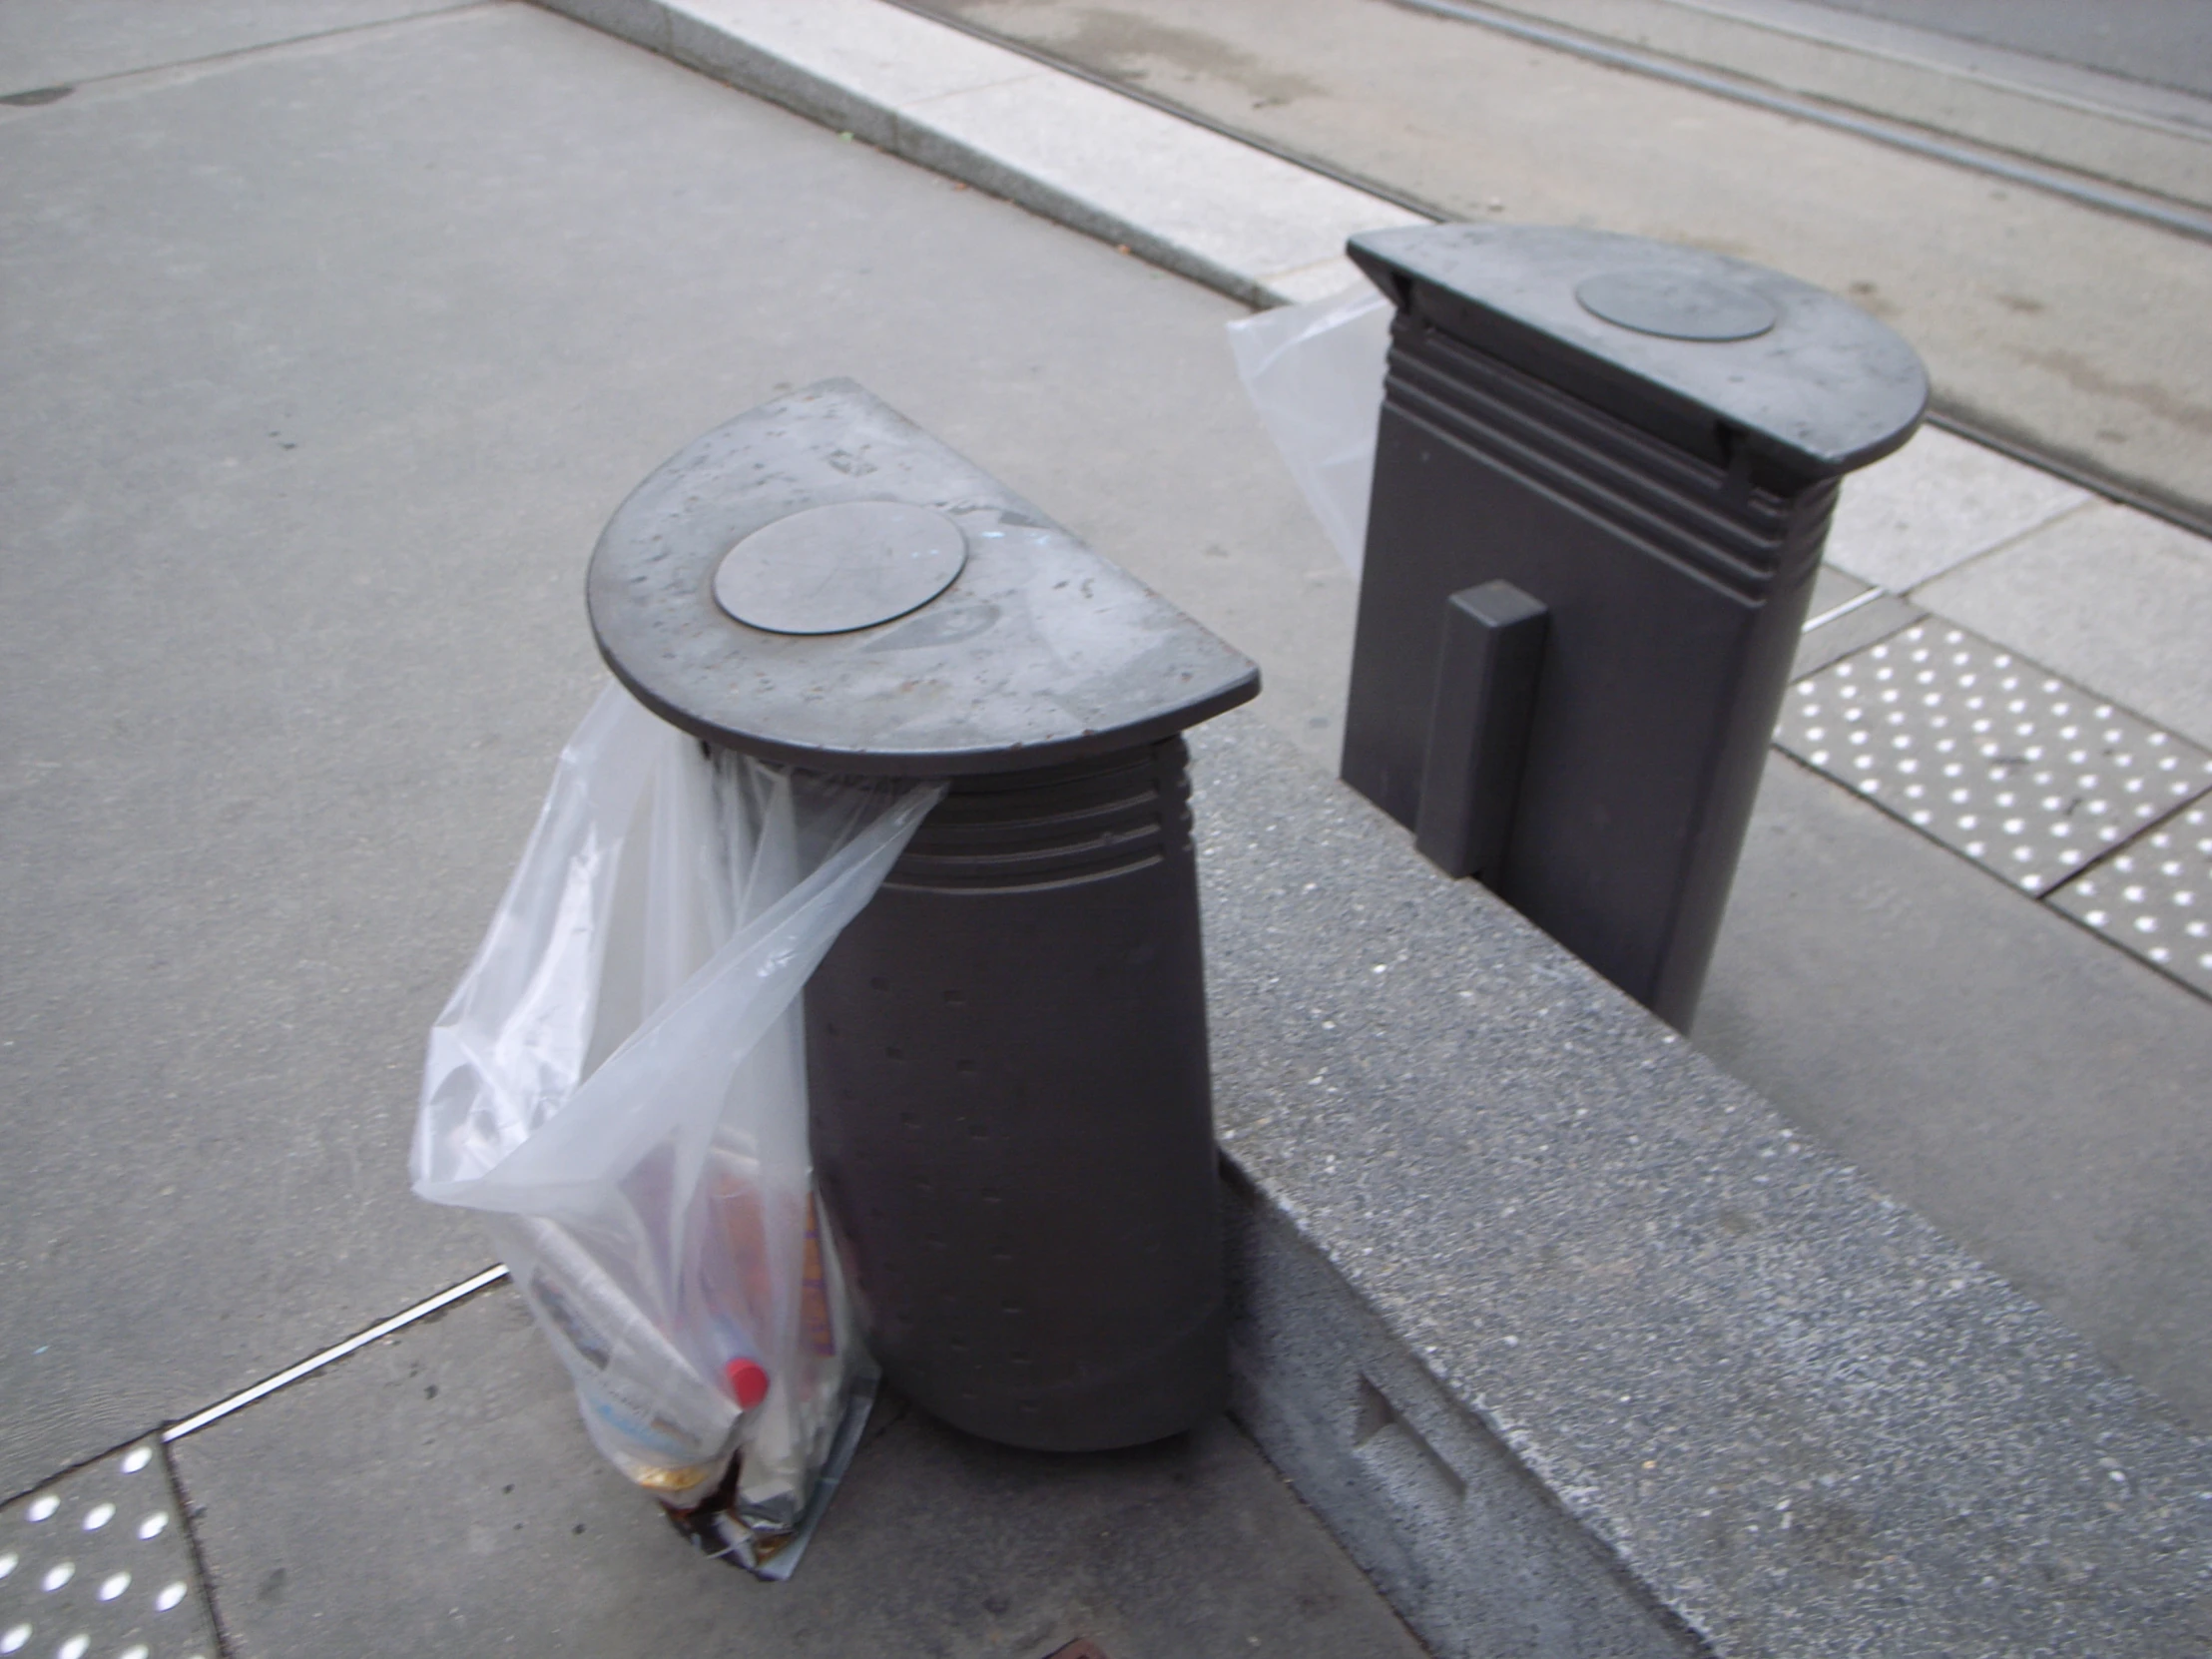 trash cans sitting on a sidewalk next to a street